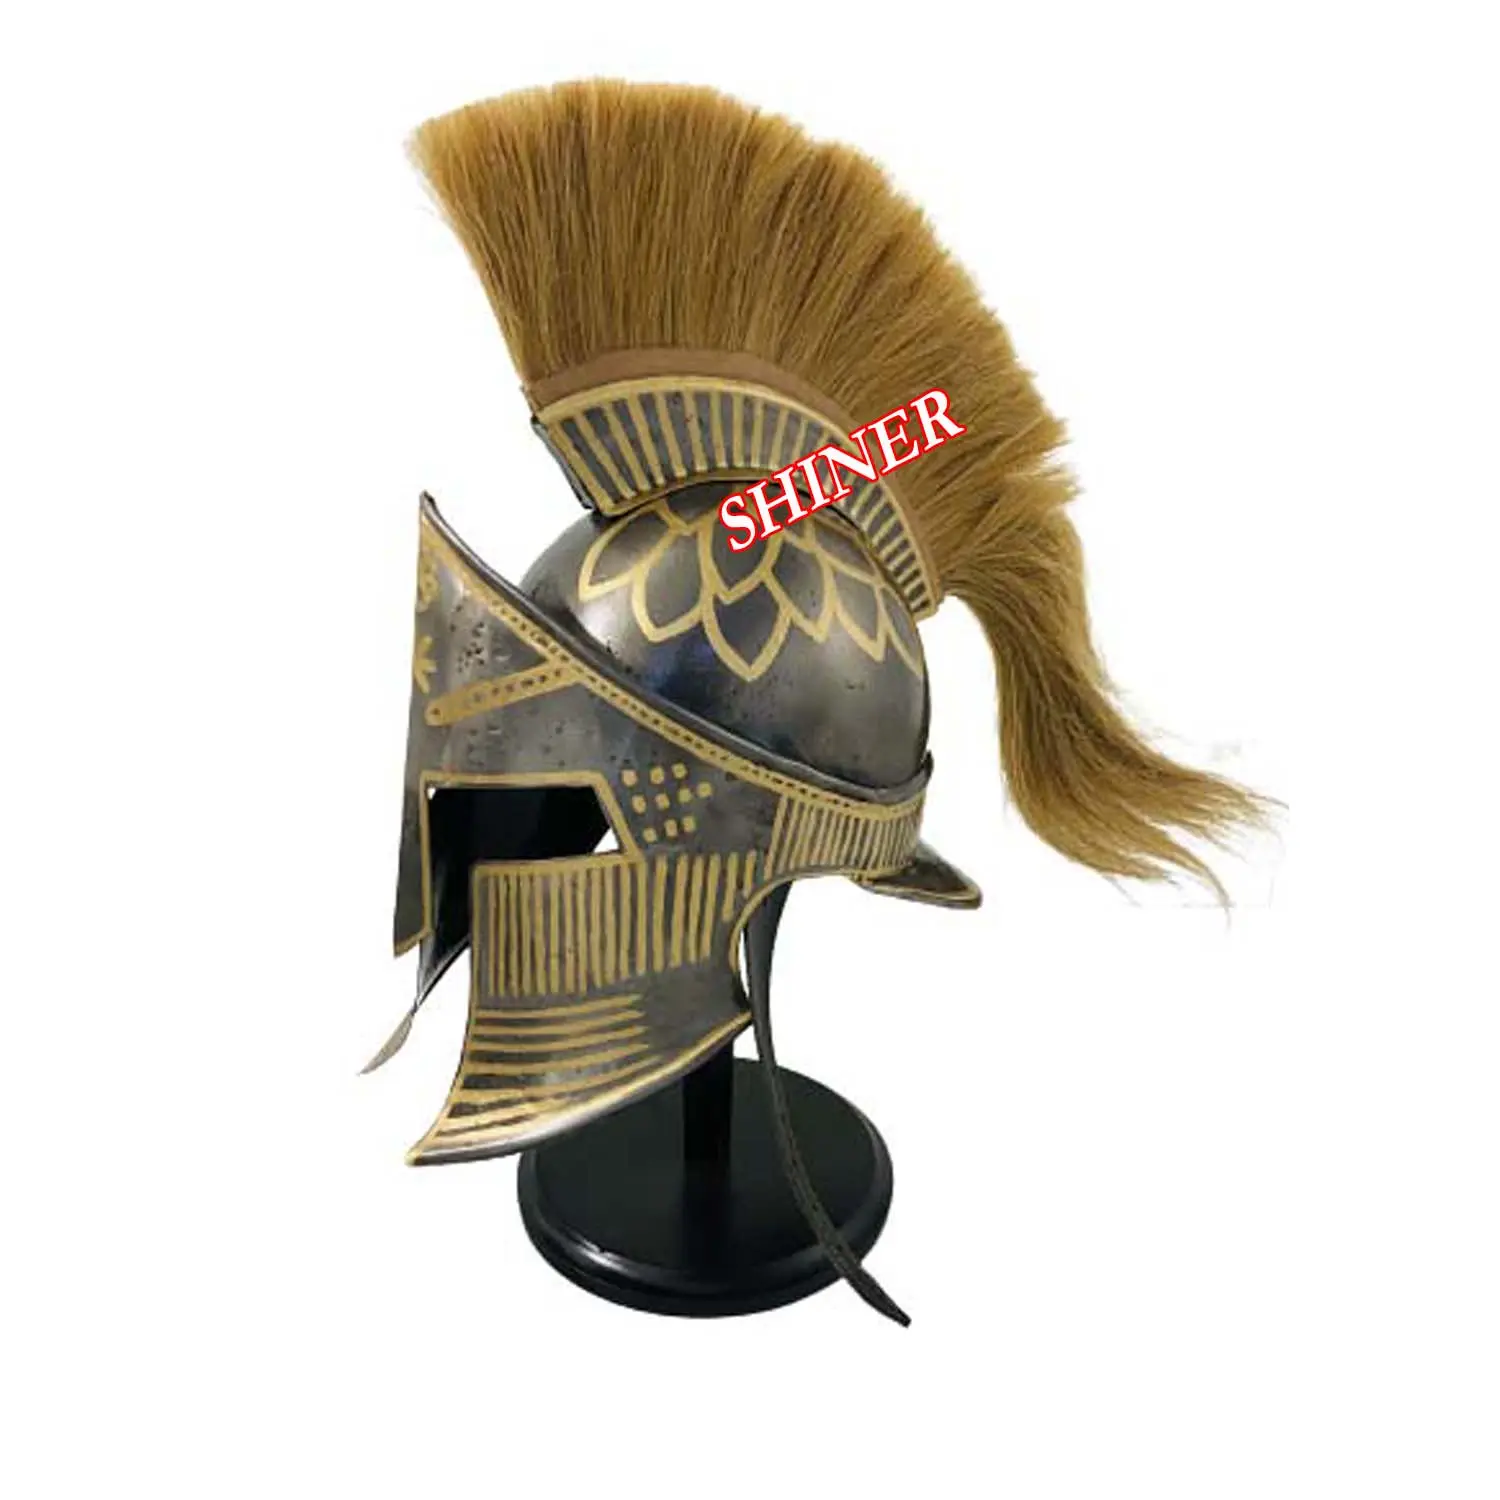 Armor Corinthian Vua 300 Spartan Mũ Bảo Hiểm Cosplay Hy Lạp Armor Prop Mặc Mũ Bảo Hiểm Bằng Gỗ Hiển Thị Đứng Tự Nhiên Chùm Cho Nam Giới Hel